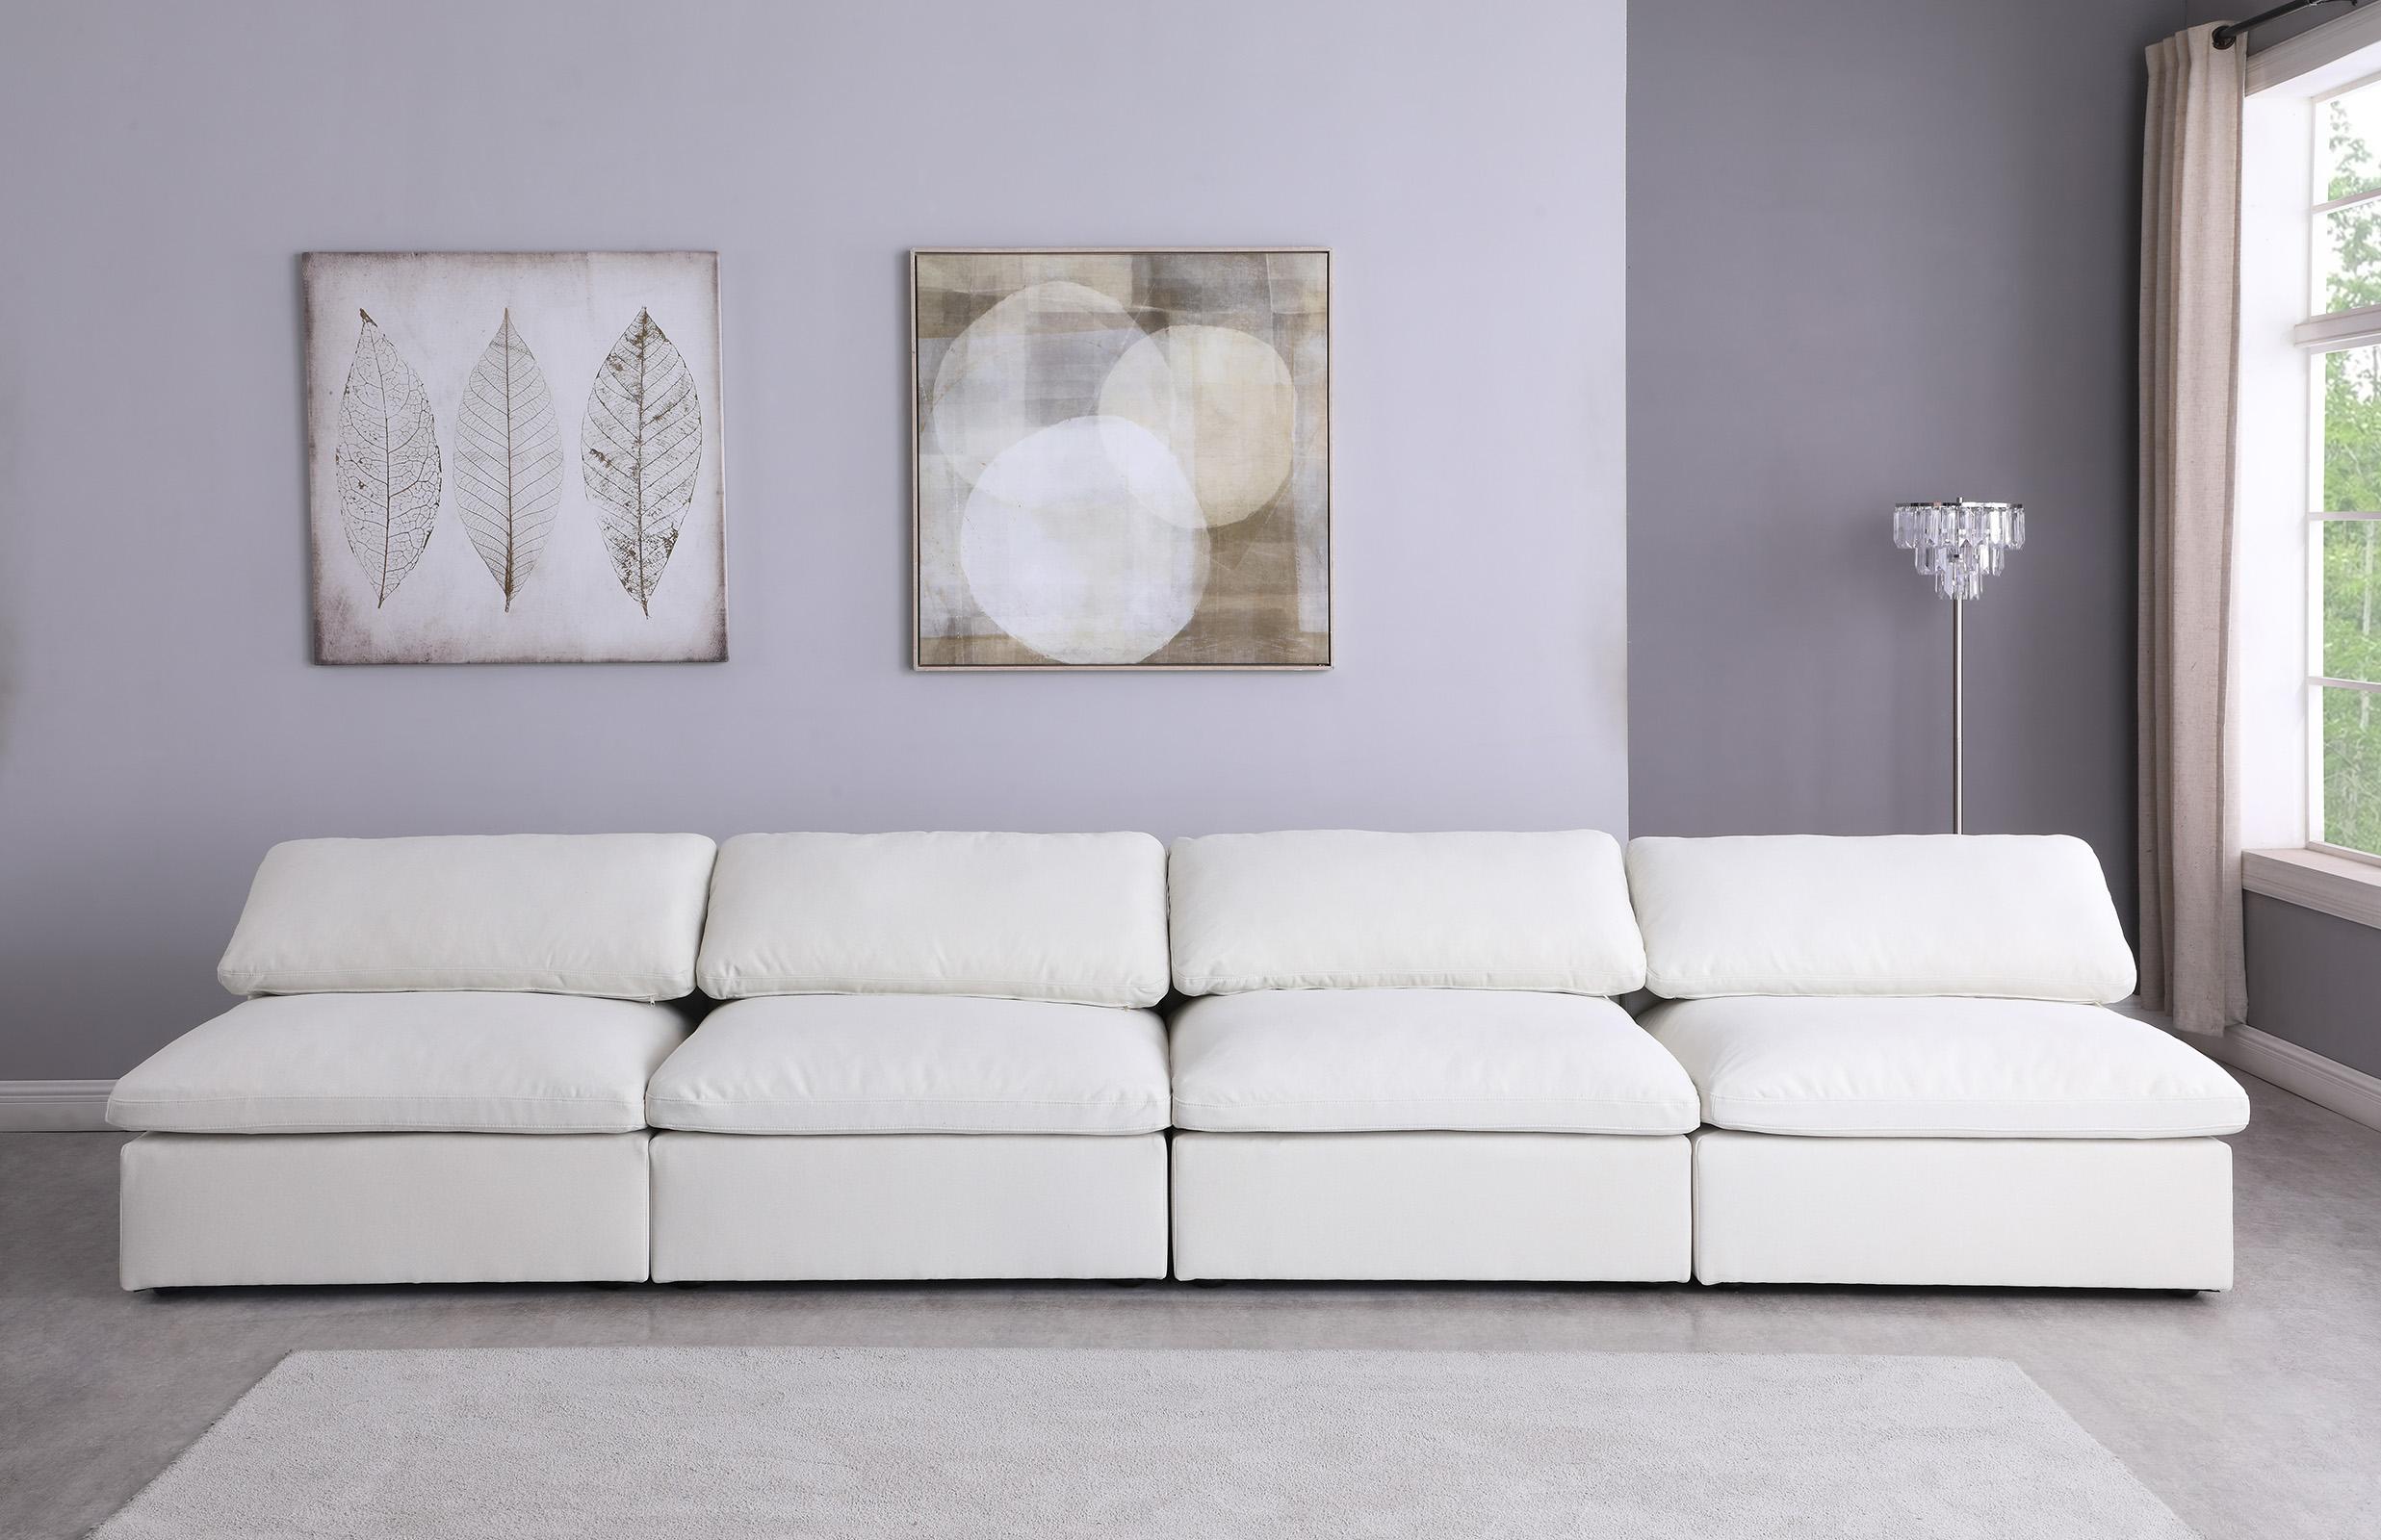 

    
Meridian Furniture SERENE 601Cream-S156 Modular Sofa Cream 601Cream-S156
